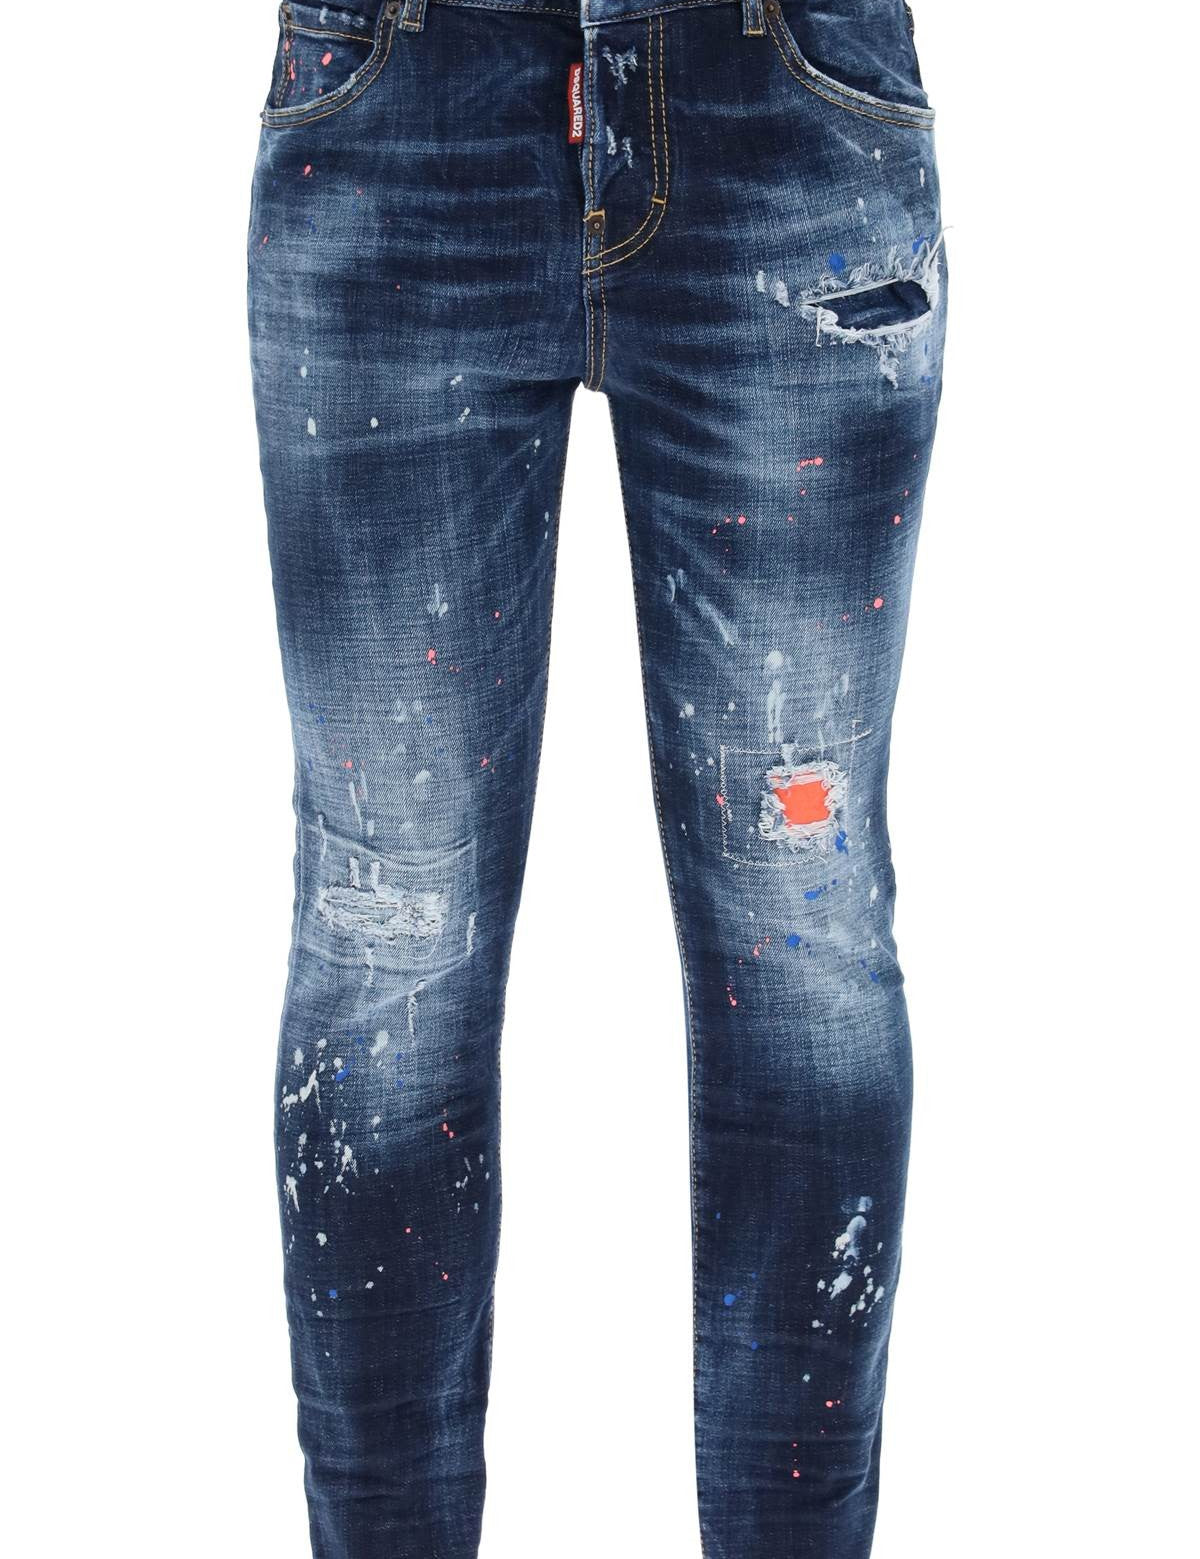 dark-neon-splash-wash-642-jeans.jpg